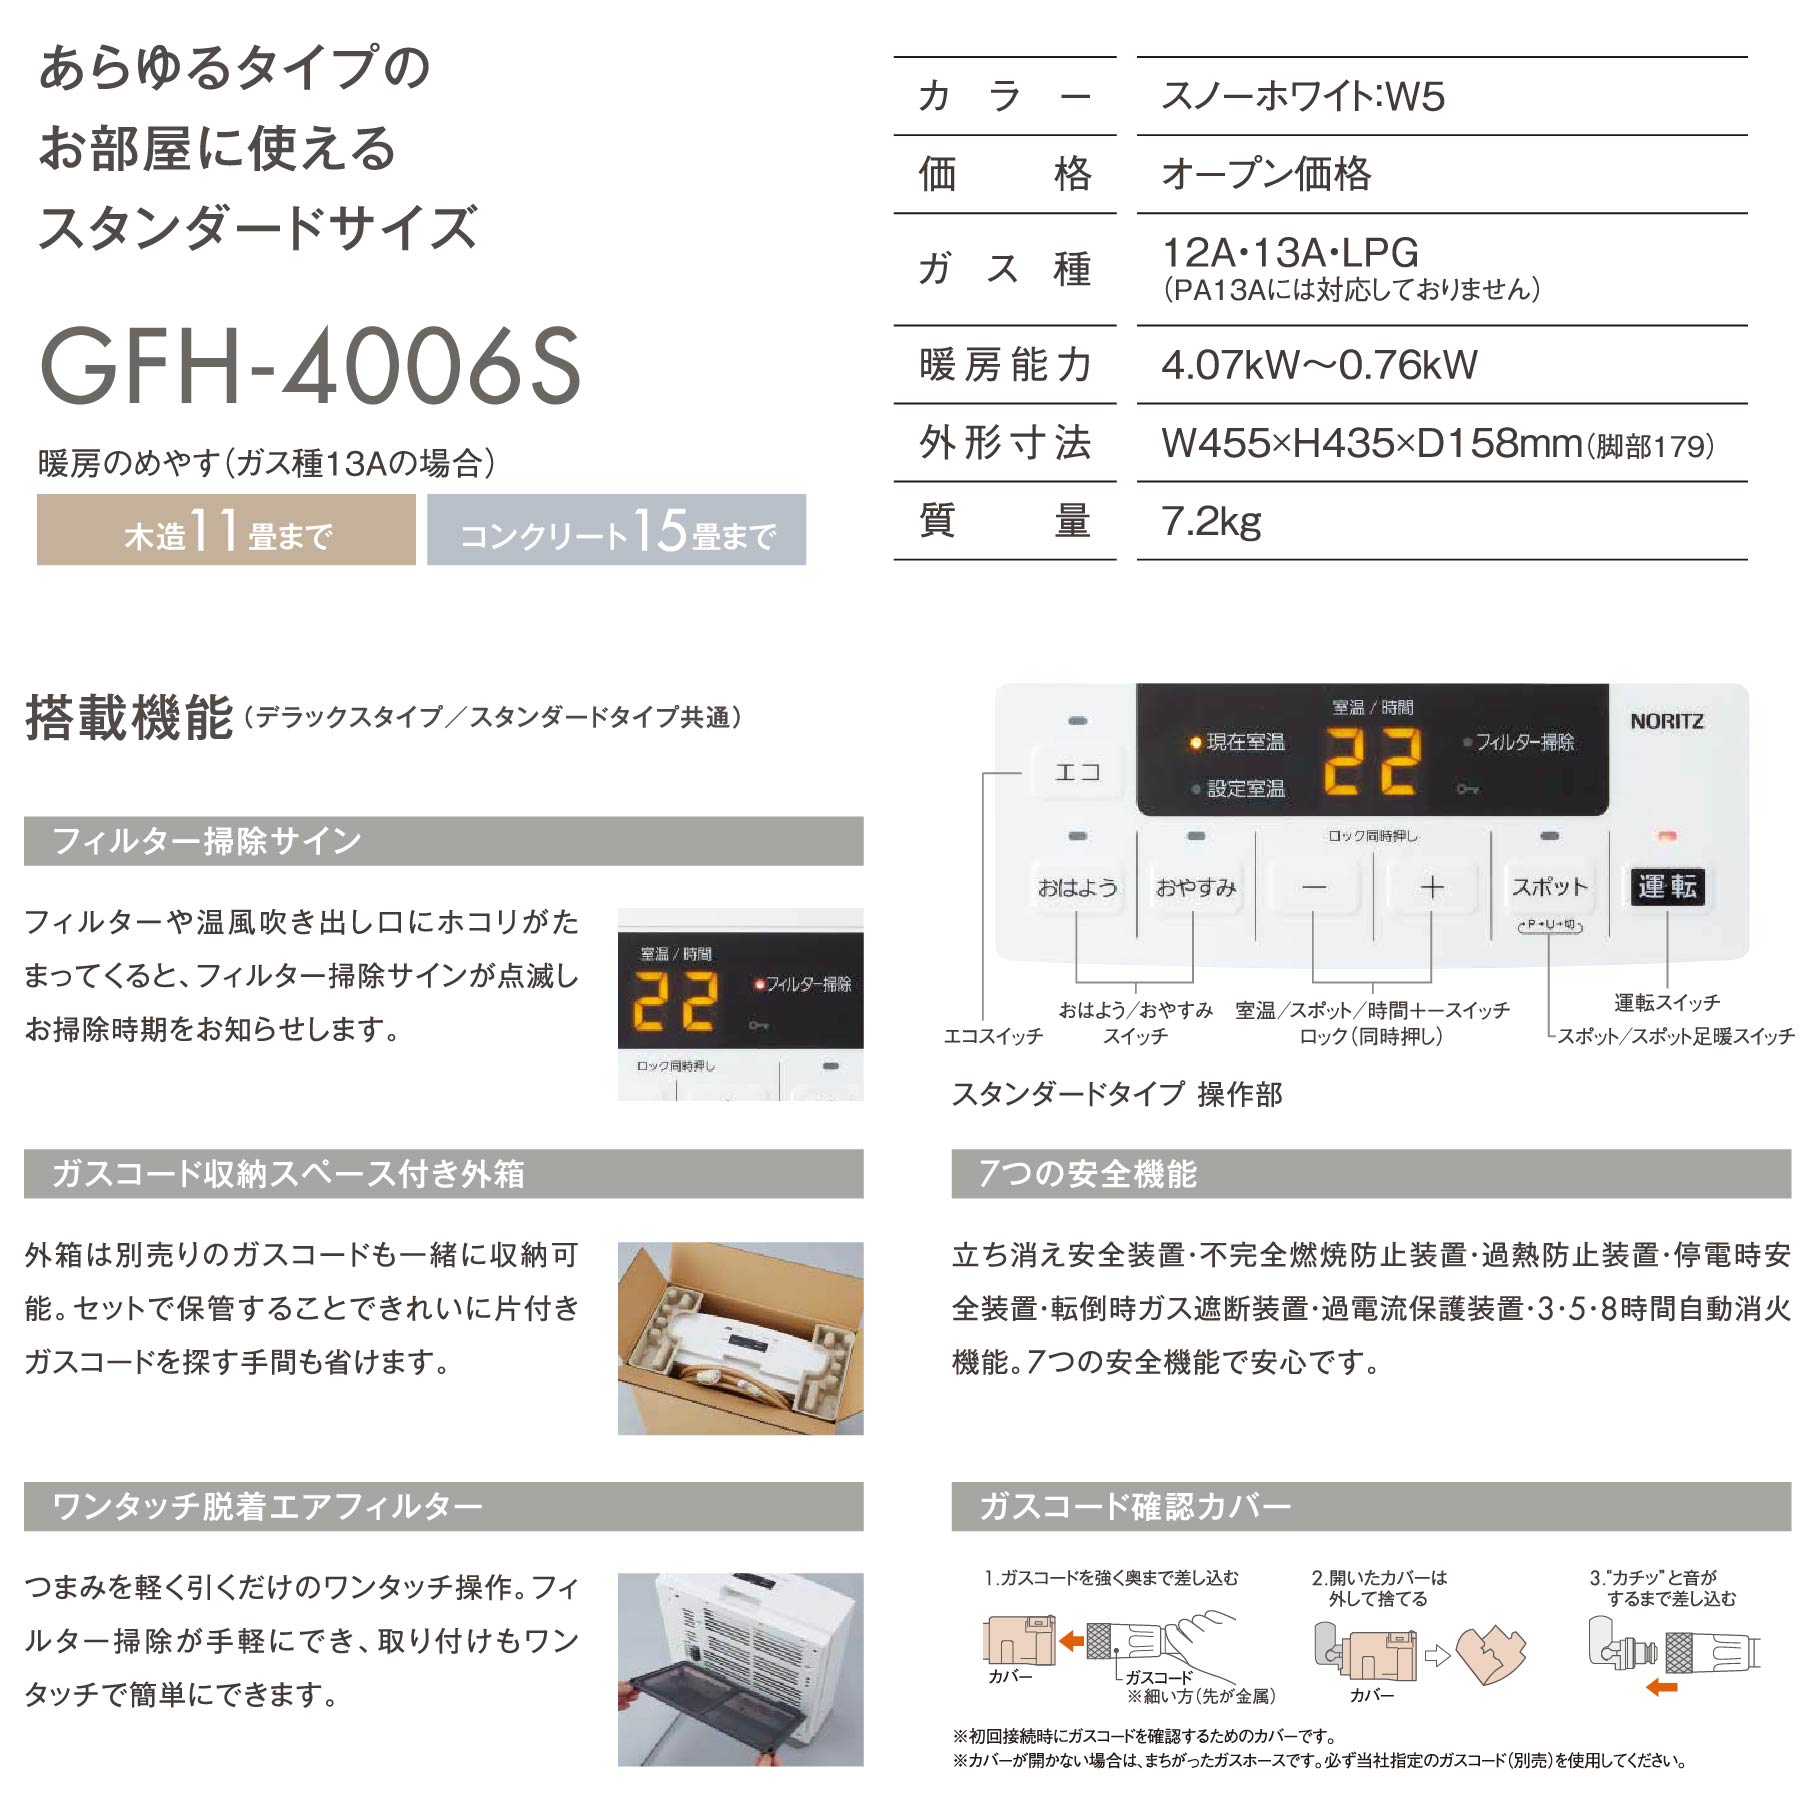 楽天市場】ノーリツ ガスファンヒーター GFH-4006S(W5) スタンダード